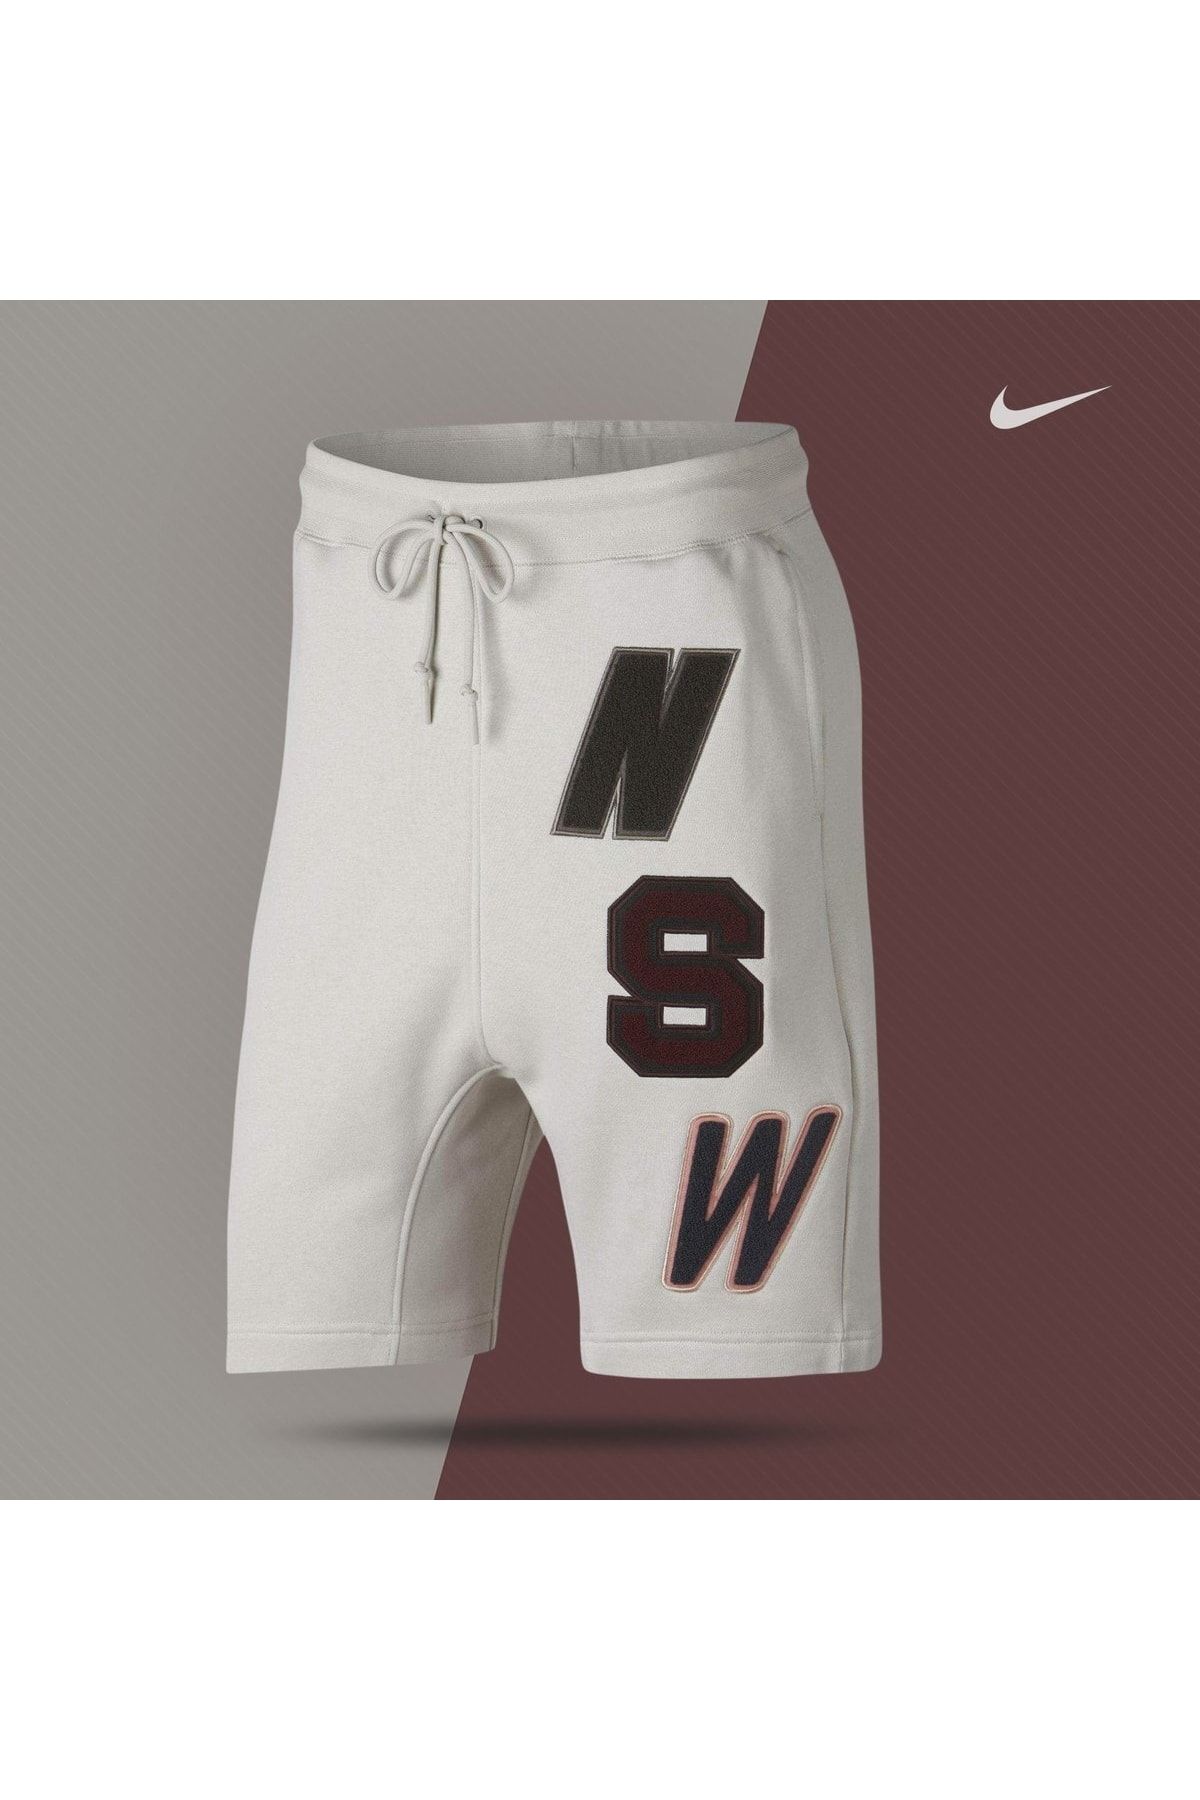 Nike Mens Sportswear Fleece Shorts 930248-072 Light Bone Brand